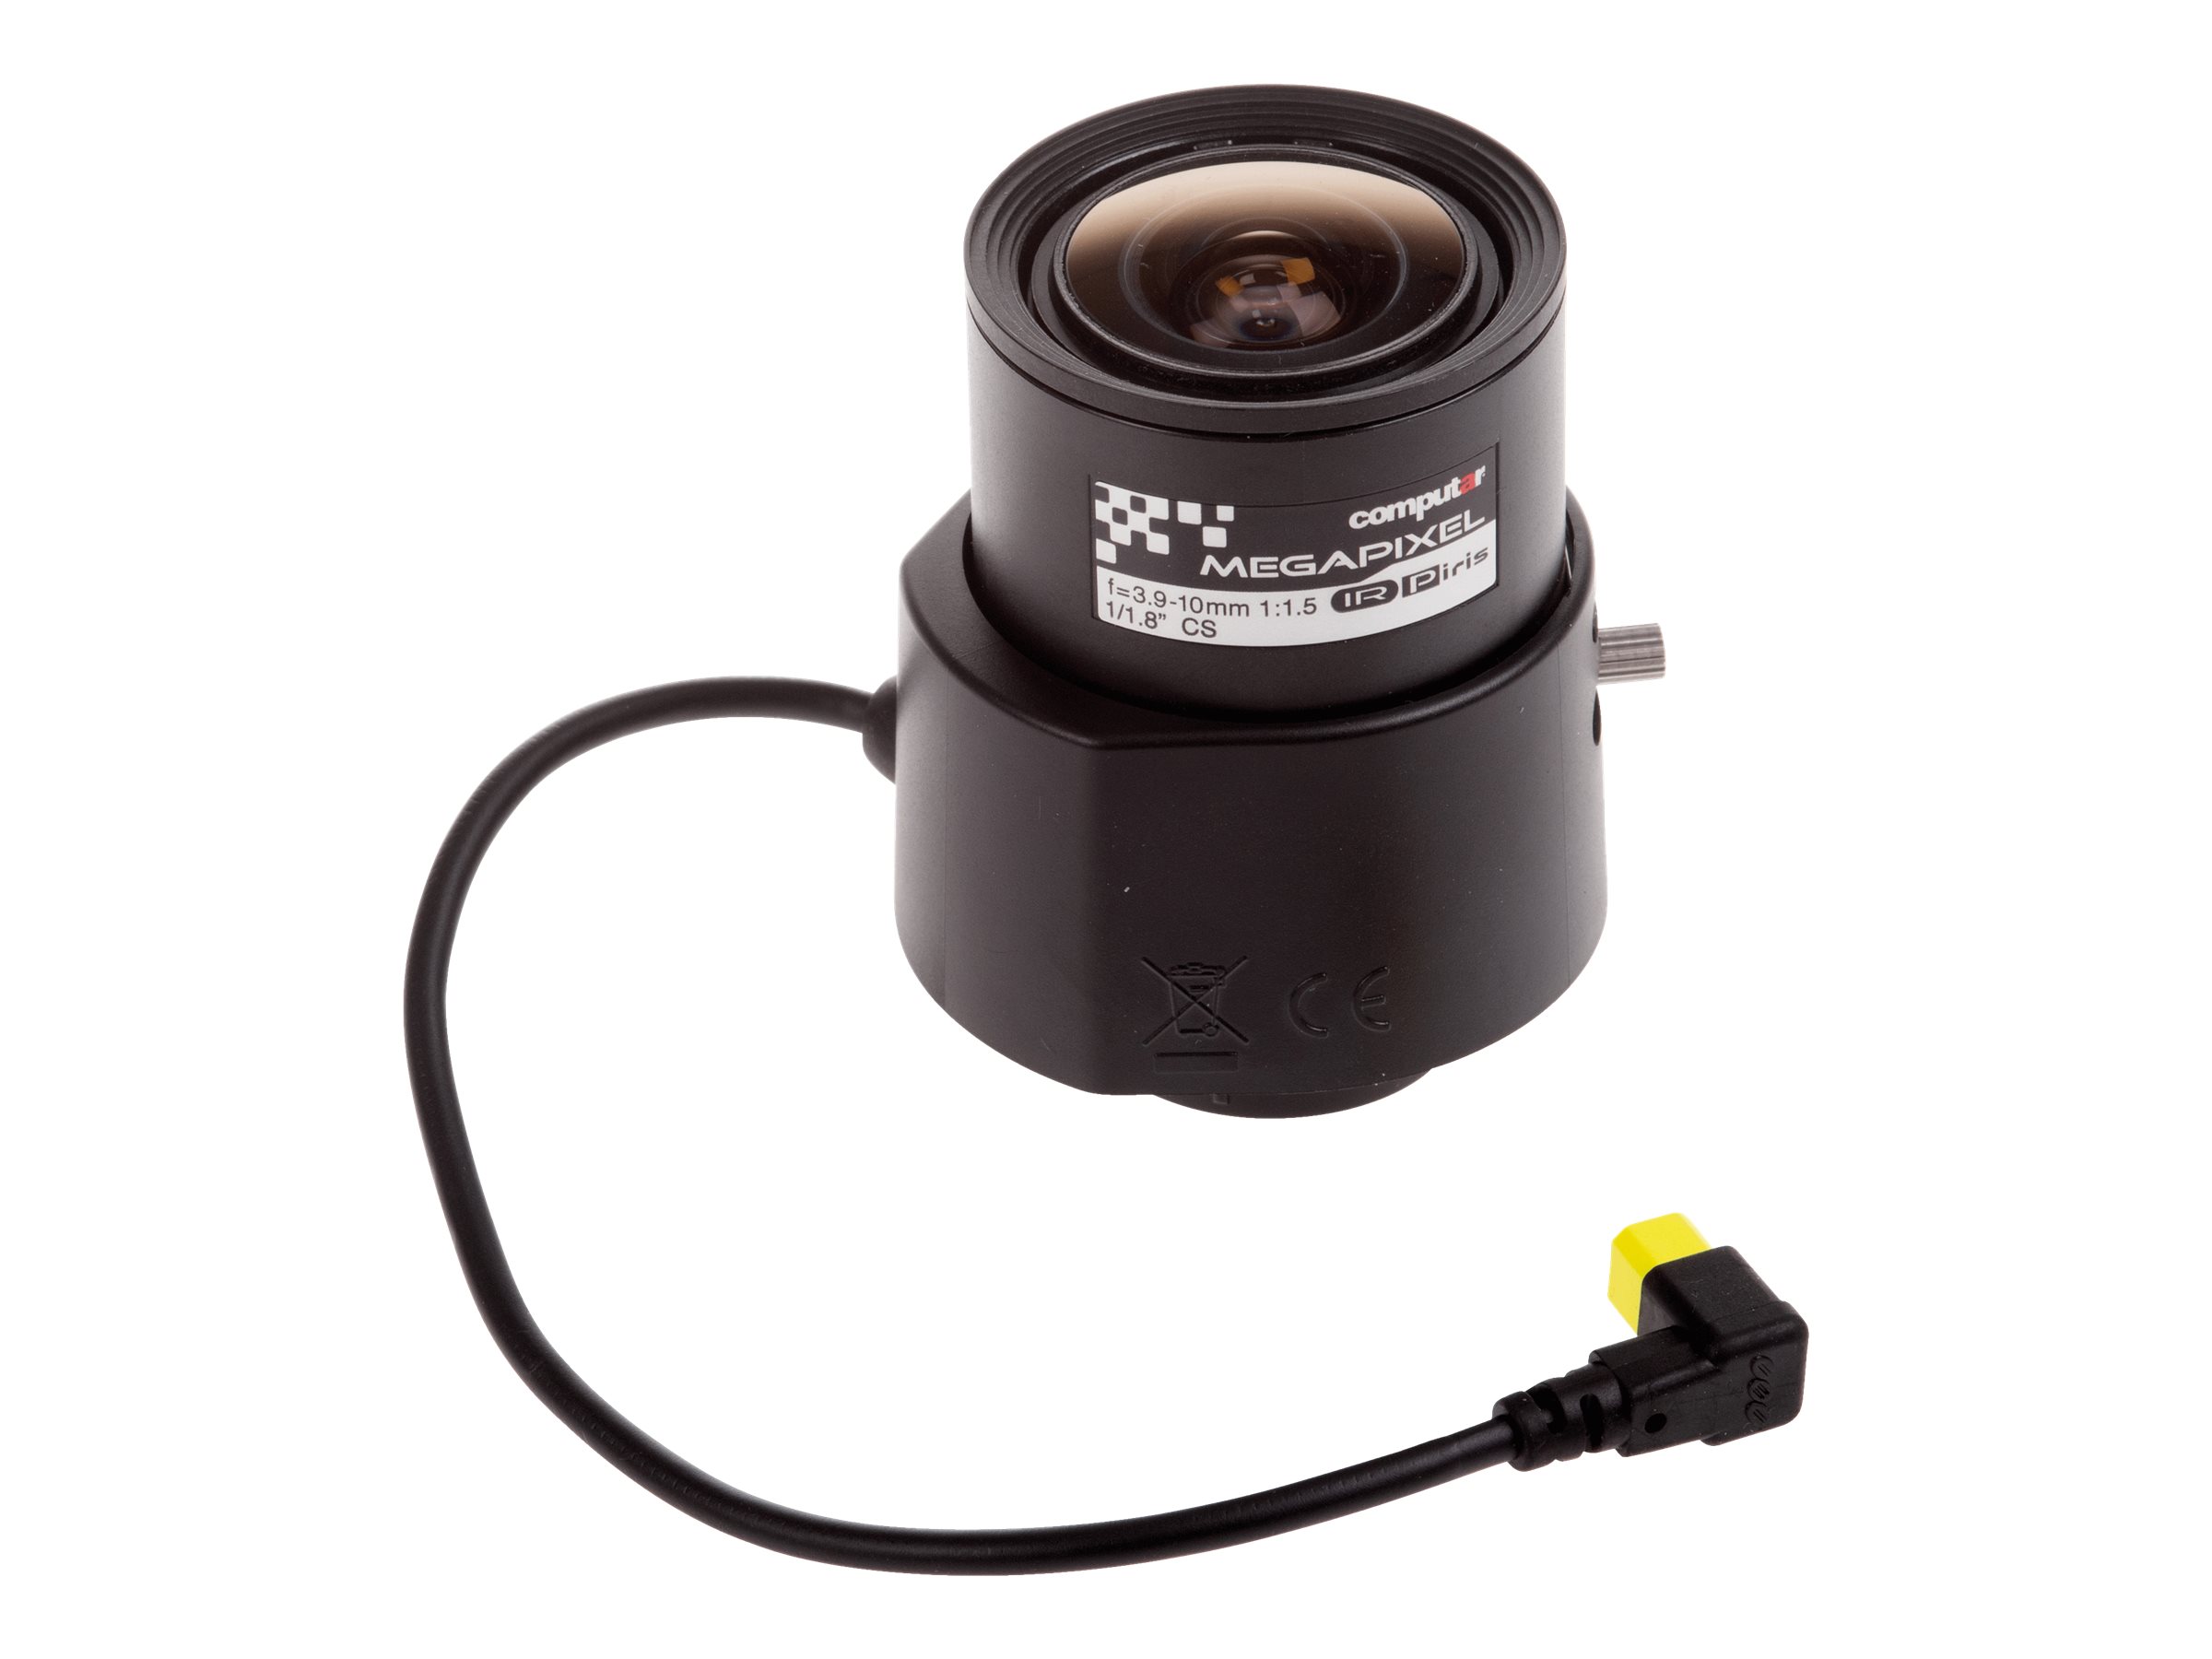 Computar Megapixel - Objectif CCTV - à focale variable - diaphragme automatique - 1/1.8" - montage CS - 3.9 mm - 10 mm - f/1.5 - pour AXIS P1378 Network Camera, P1378 Network Camera (Barebone), P1378-LE Network Camera - 02094-001 - Accessoires pour vidéosurveillance